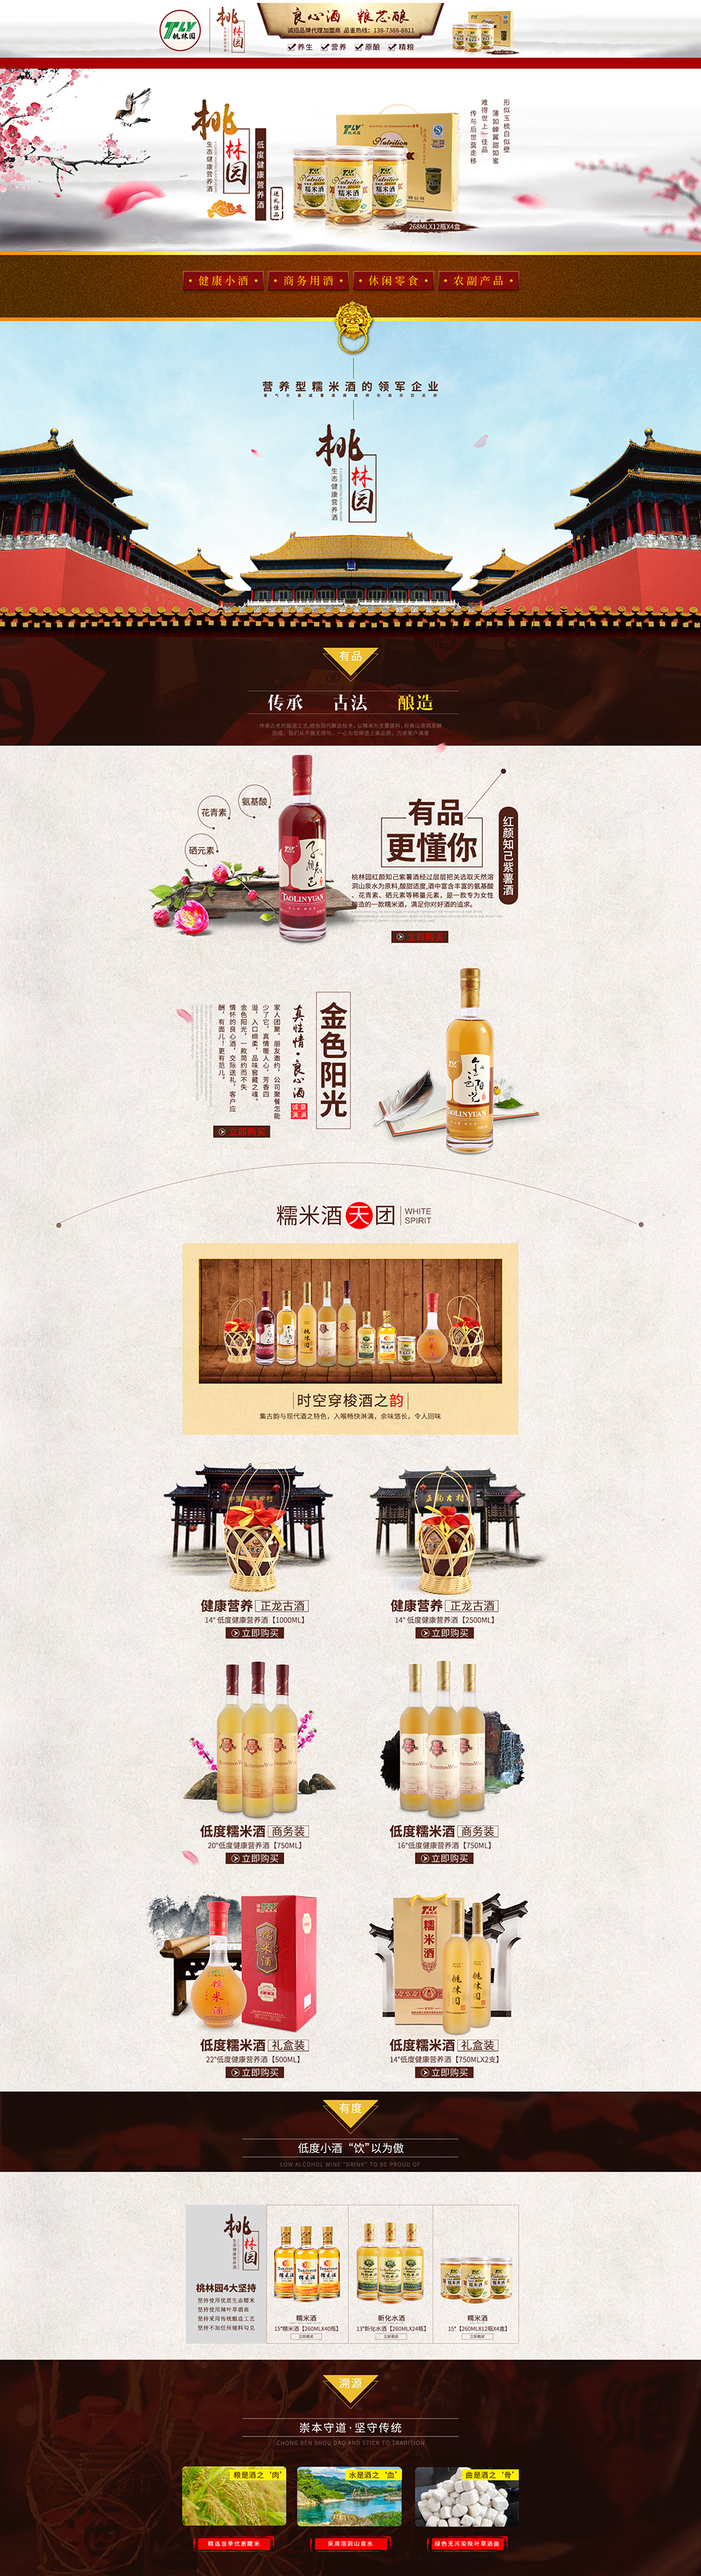 桃林园糯米酒品牌电商页面设计图1